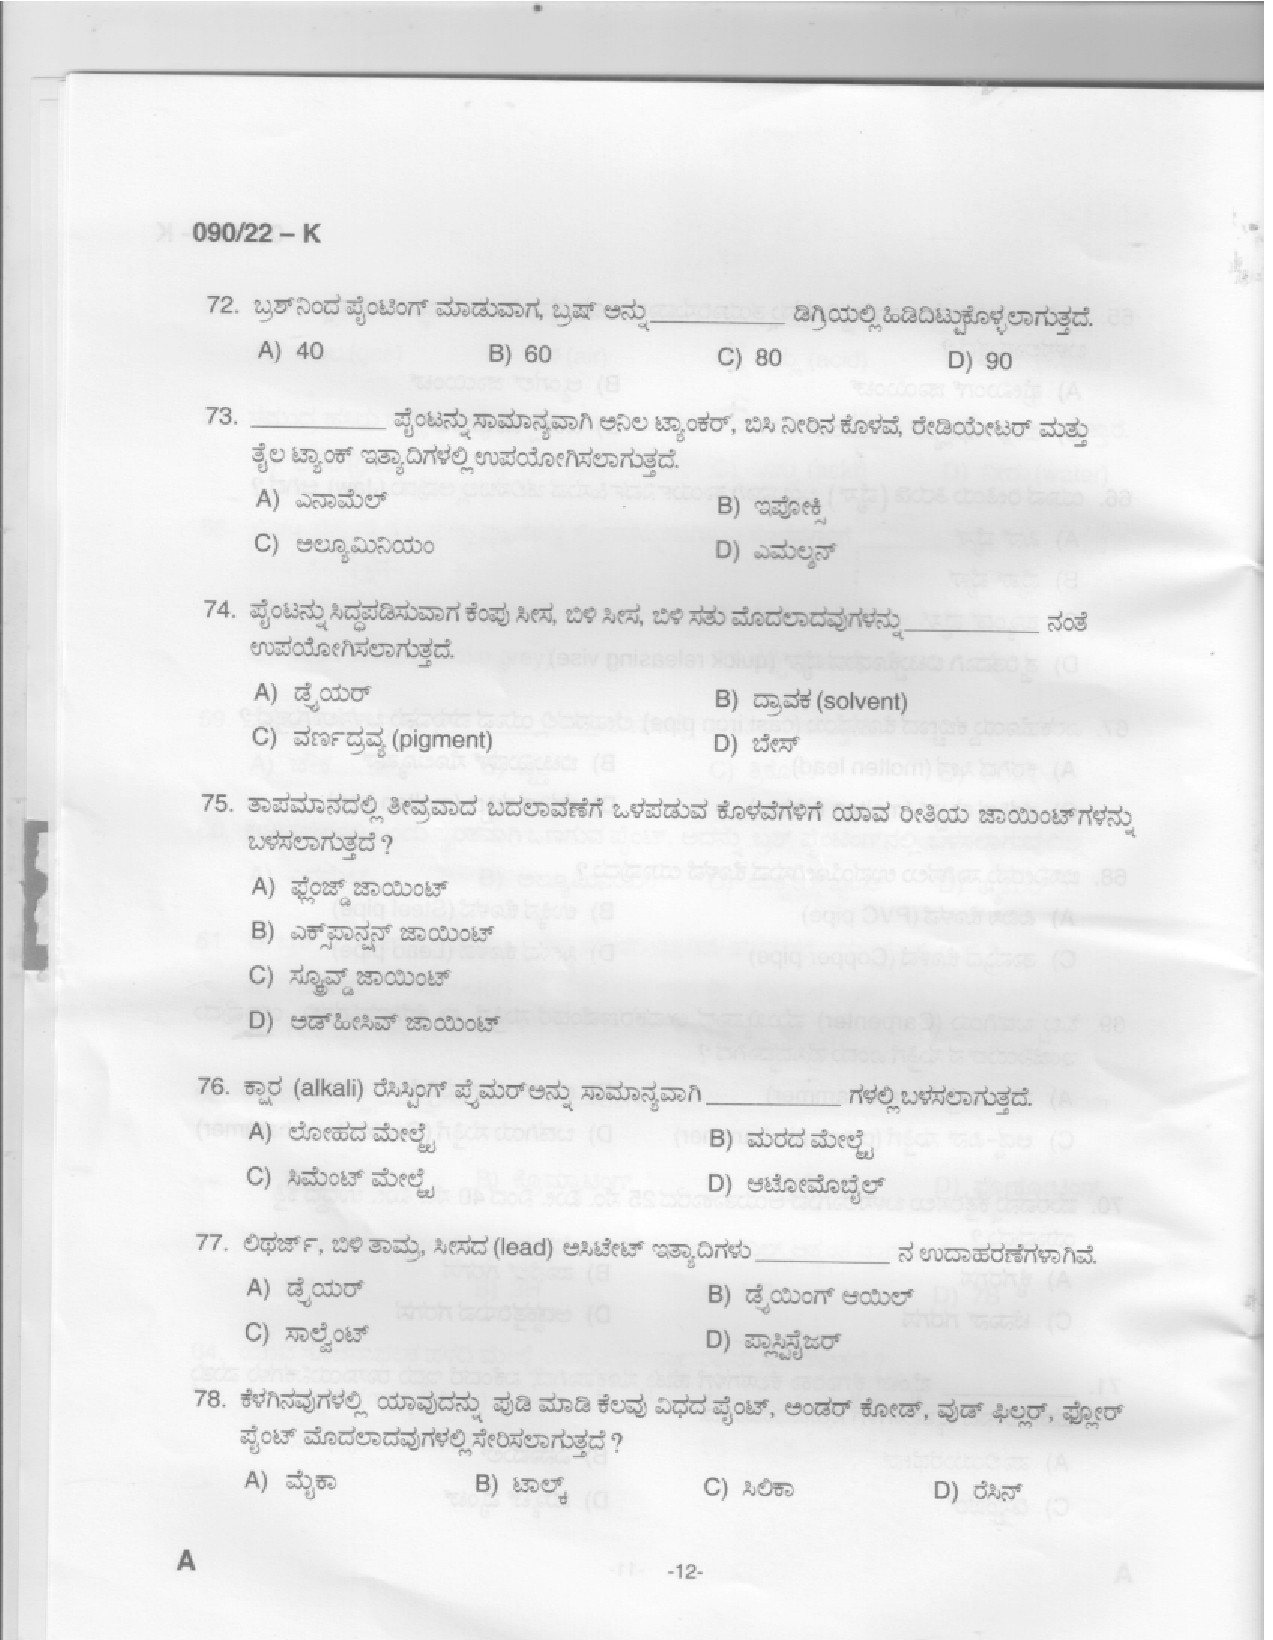 KPSC Painter Kannada Exam 2022 Code 902022 K 10